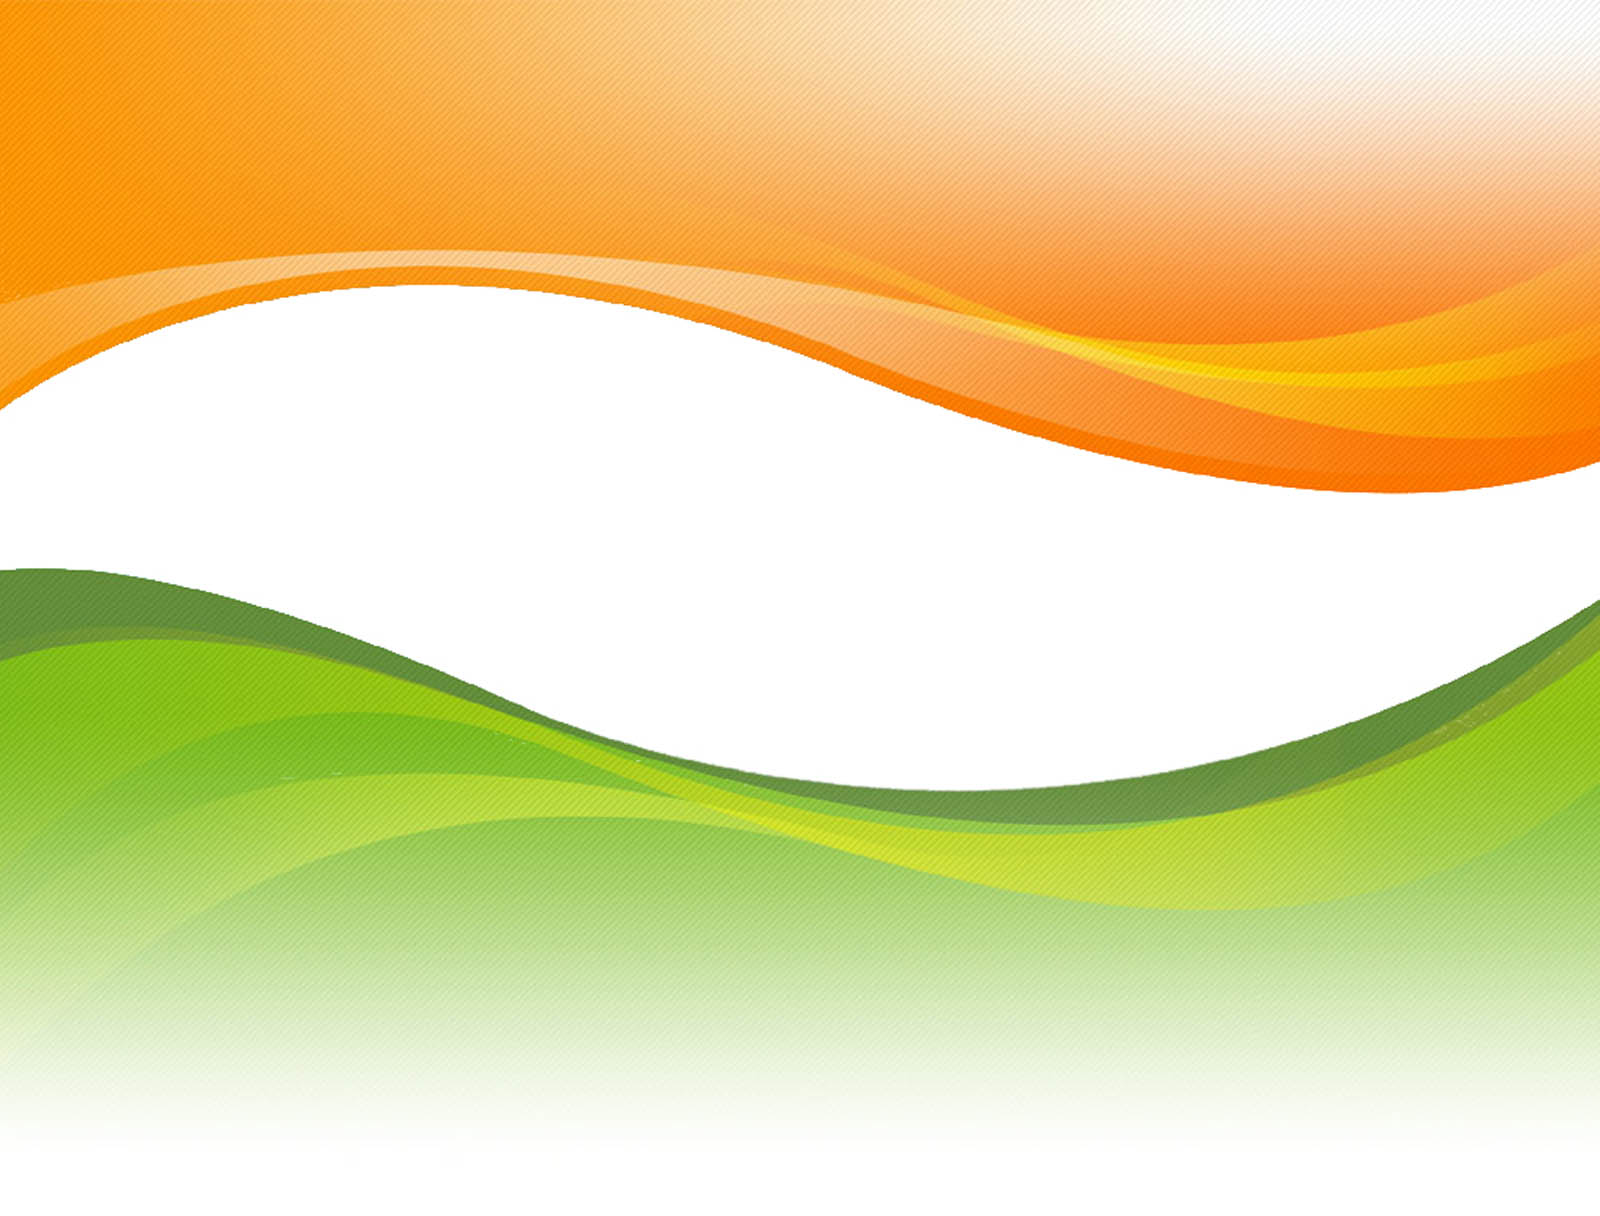 インドの旗の壁紙,緑,オレンジ,黄,ライン,クリップ・アート